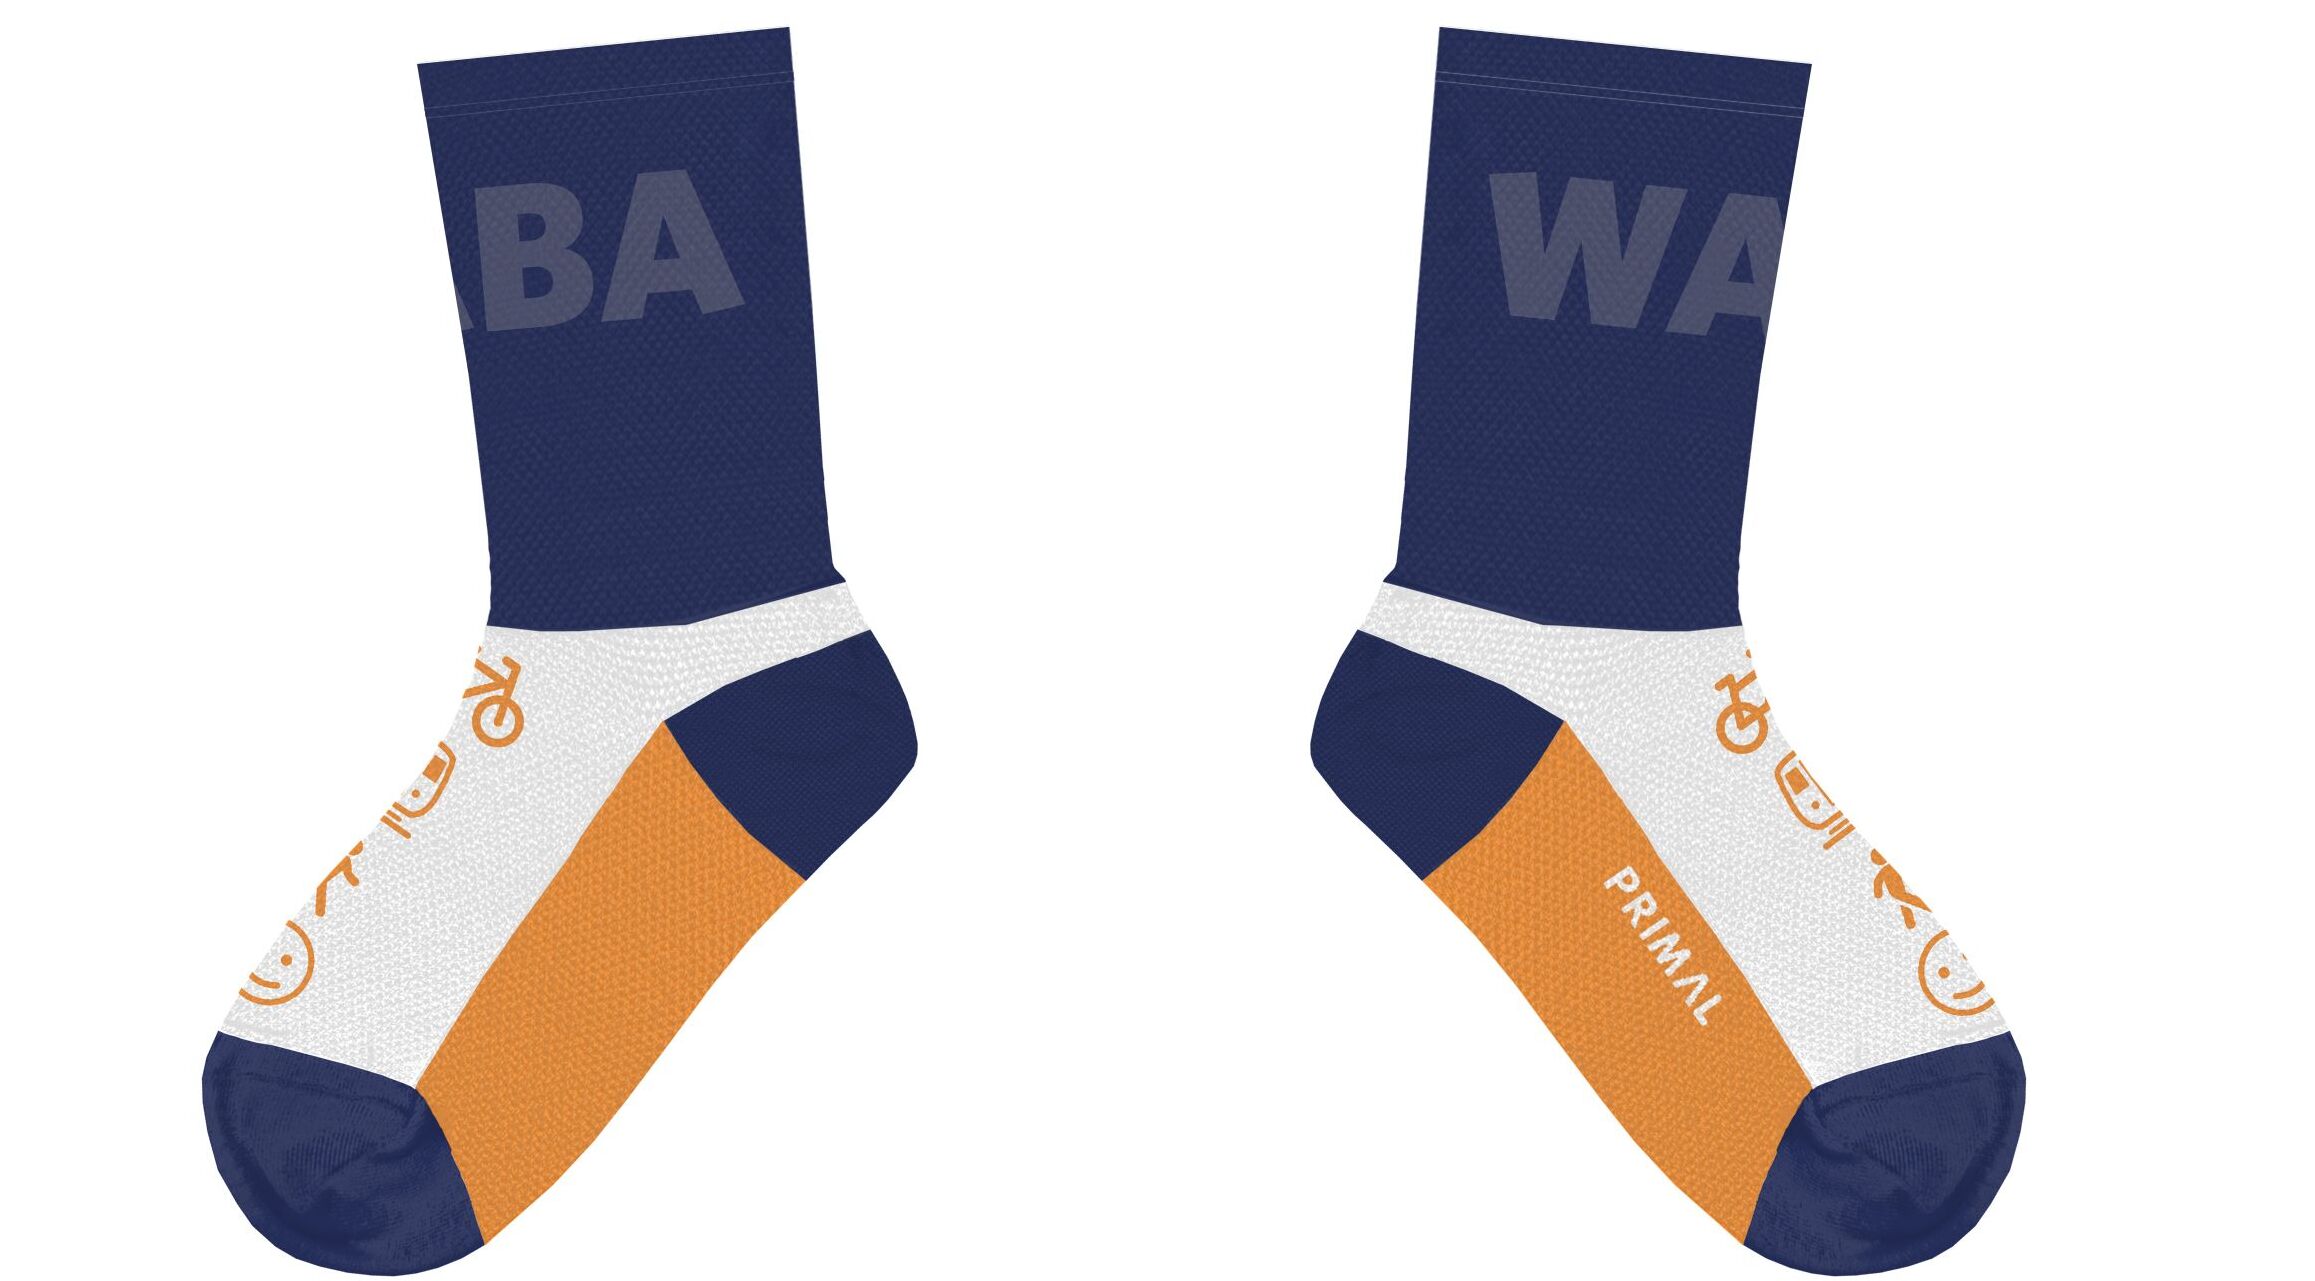 WABA's 2023 Membership Drive Socks